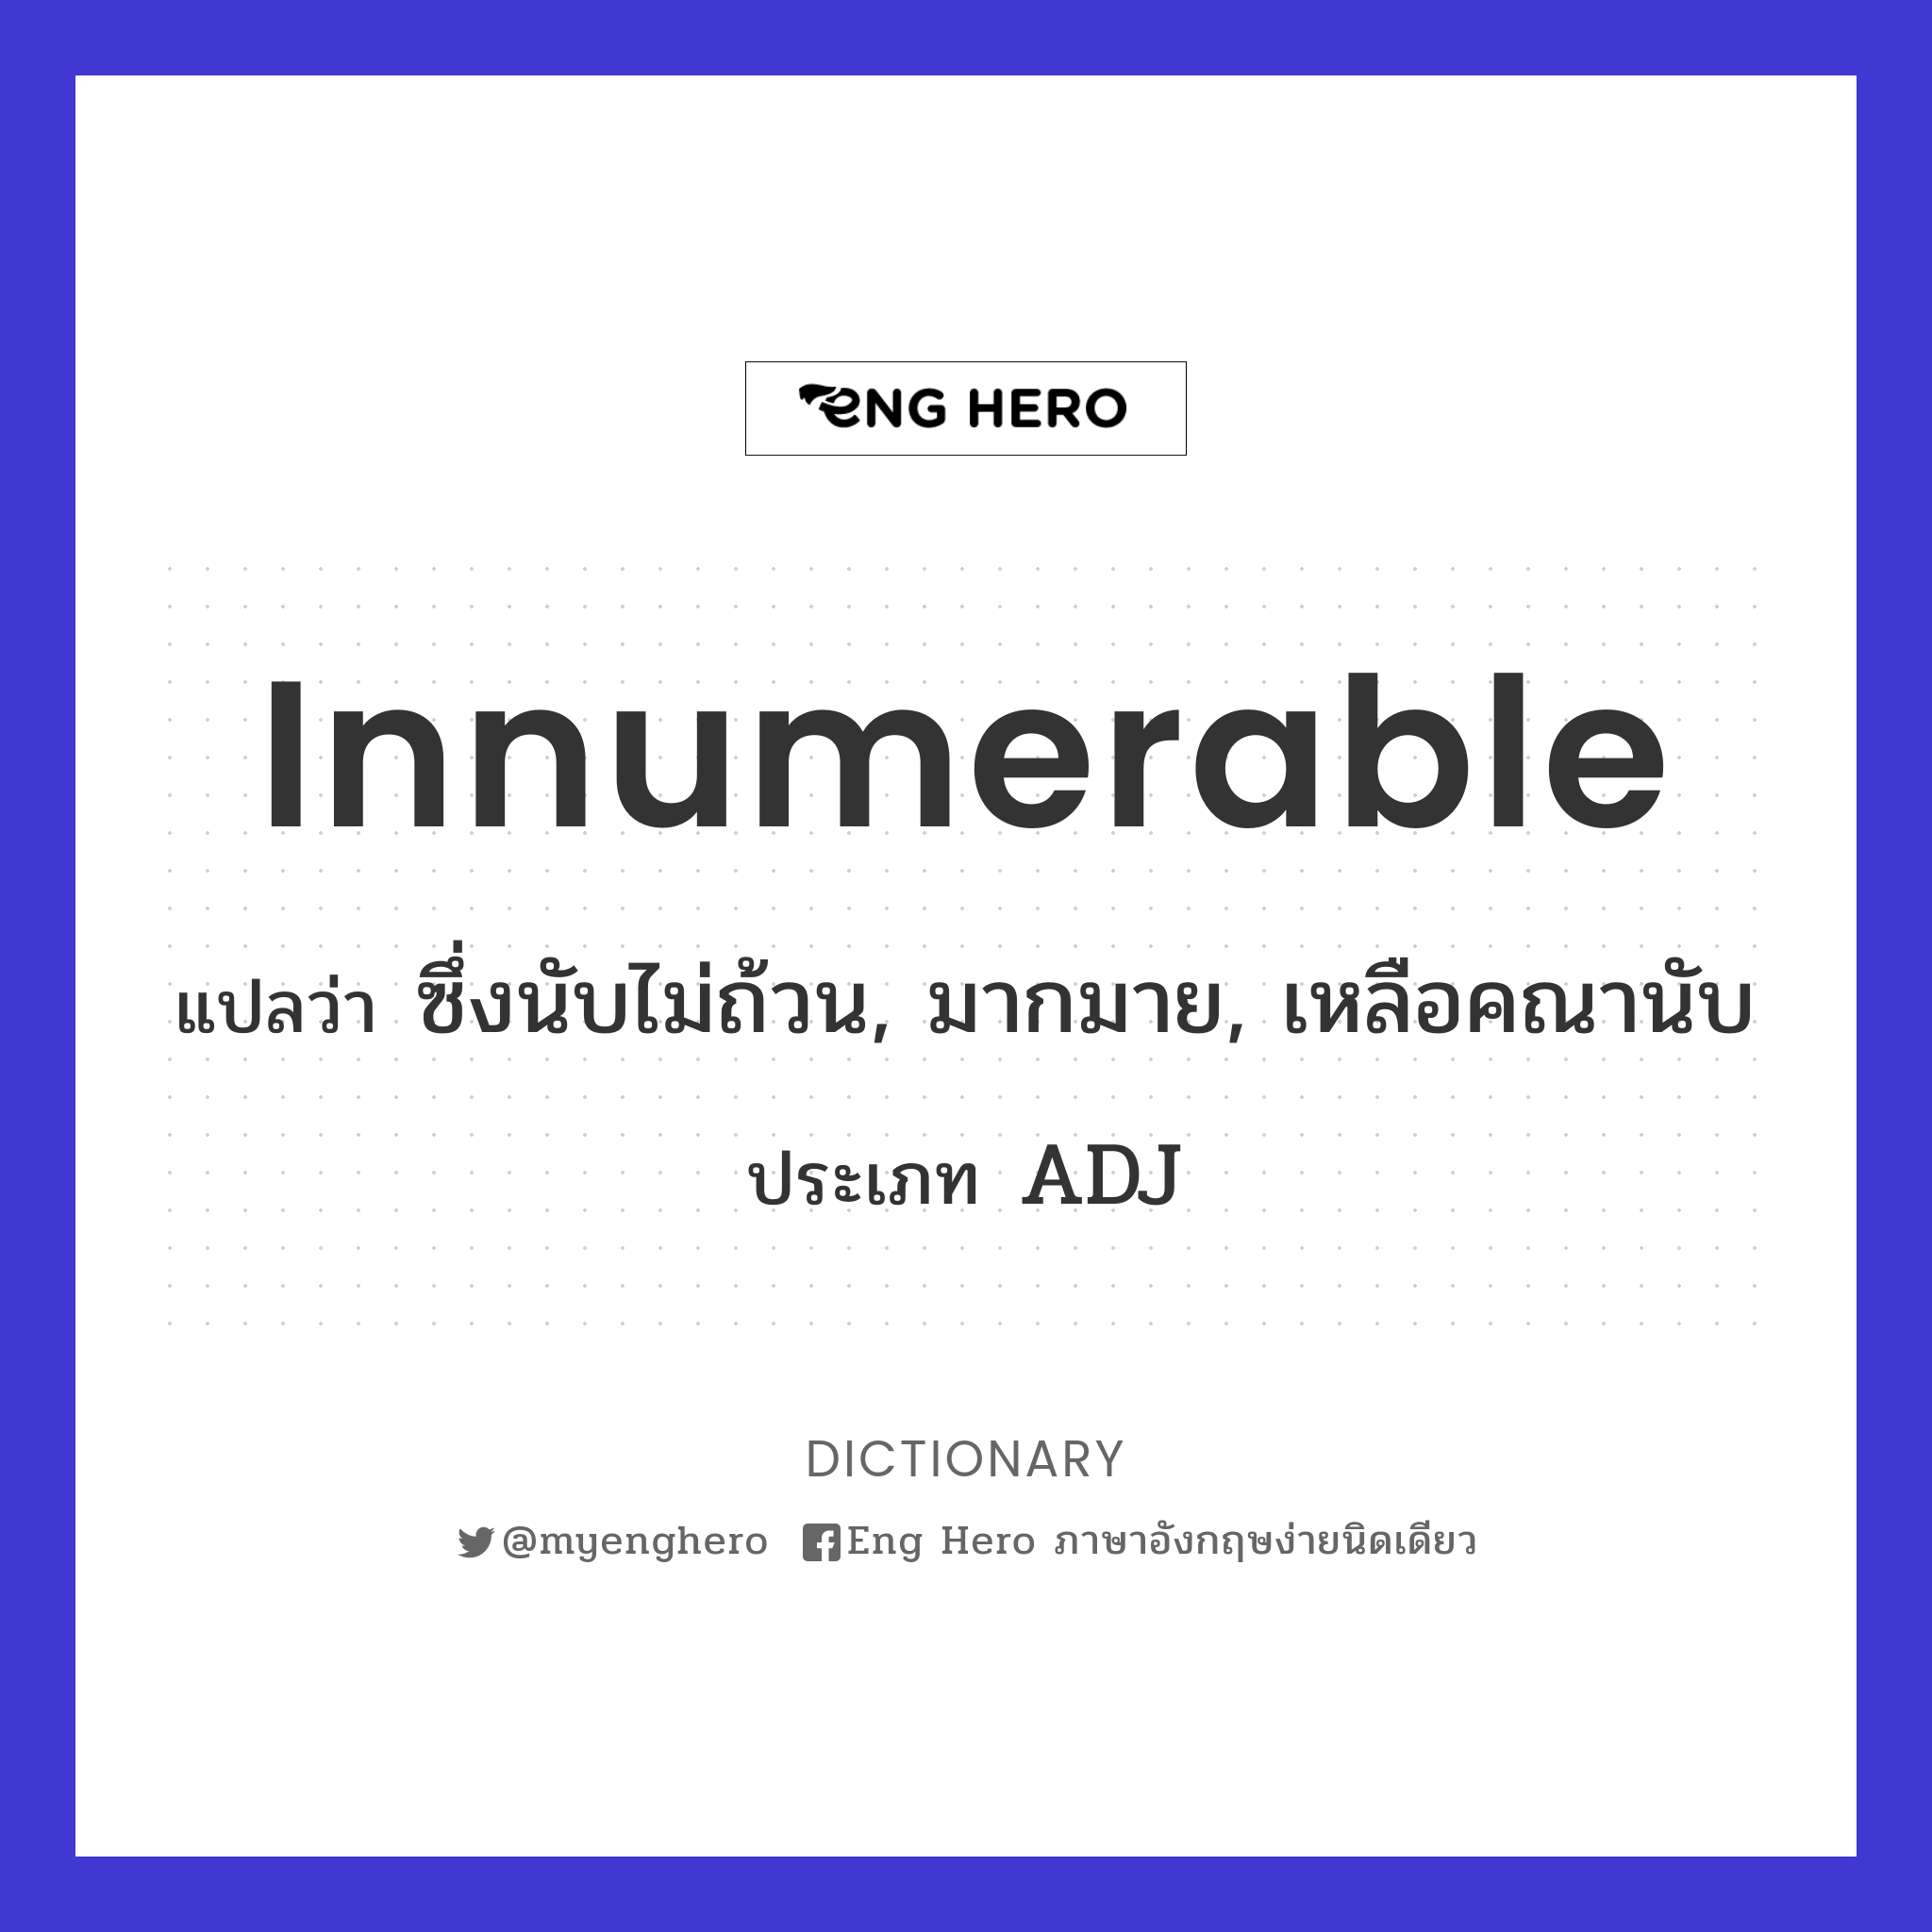 innumerable